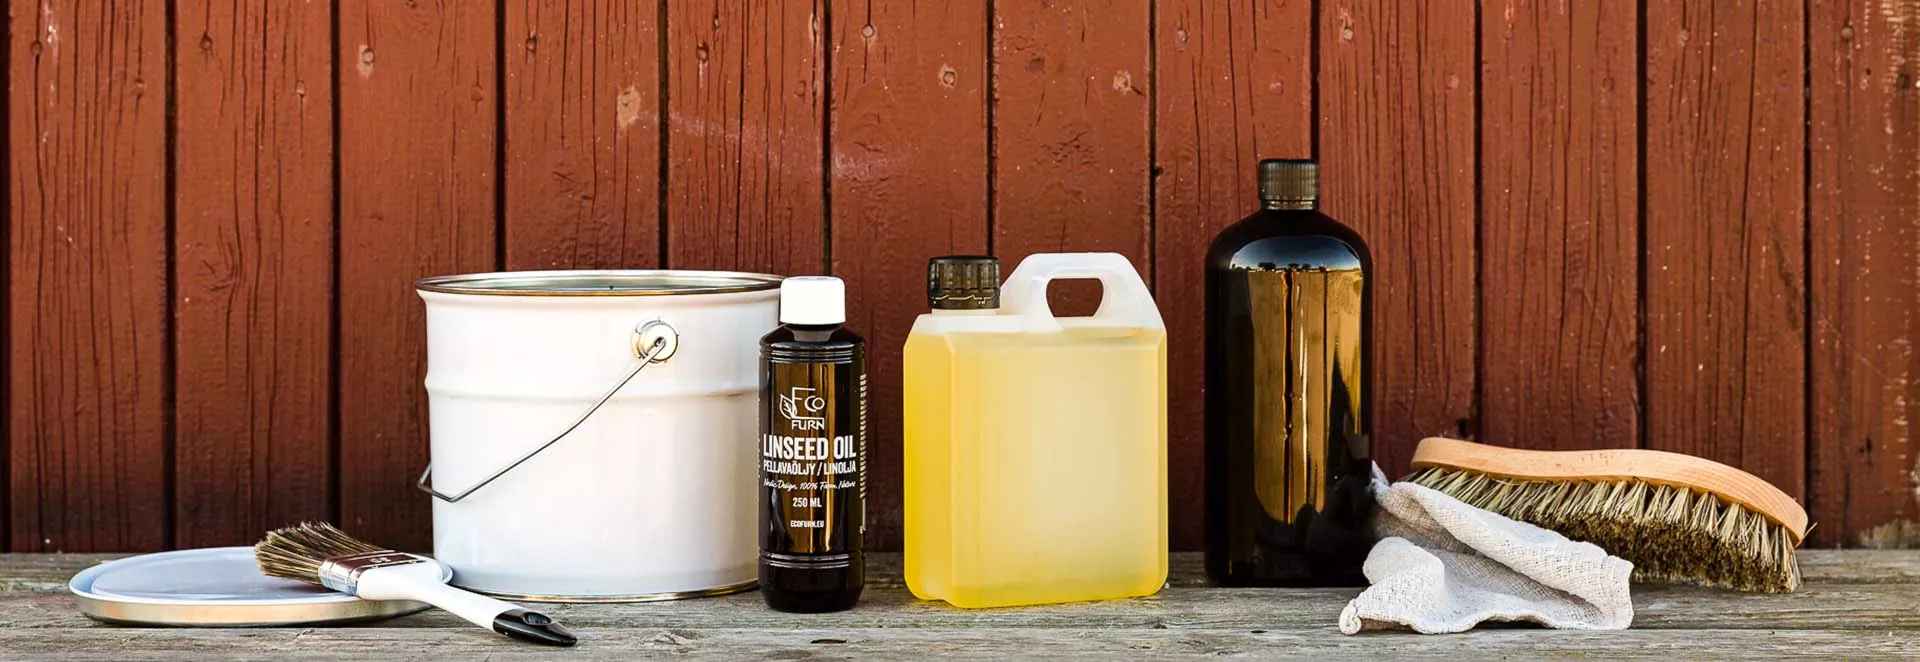 Forskellige typer emballage, der egner sig til olier, såsom linolie som på billedet